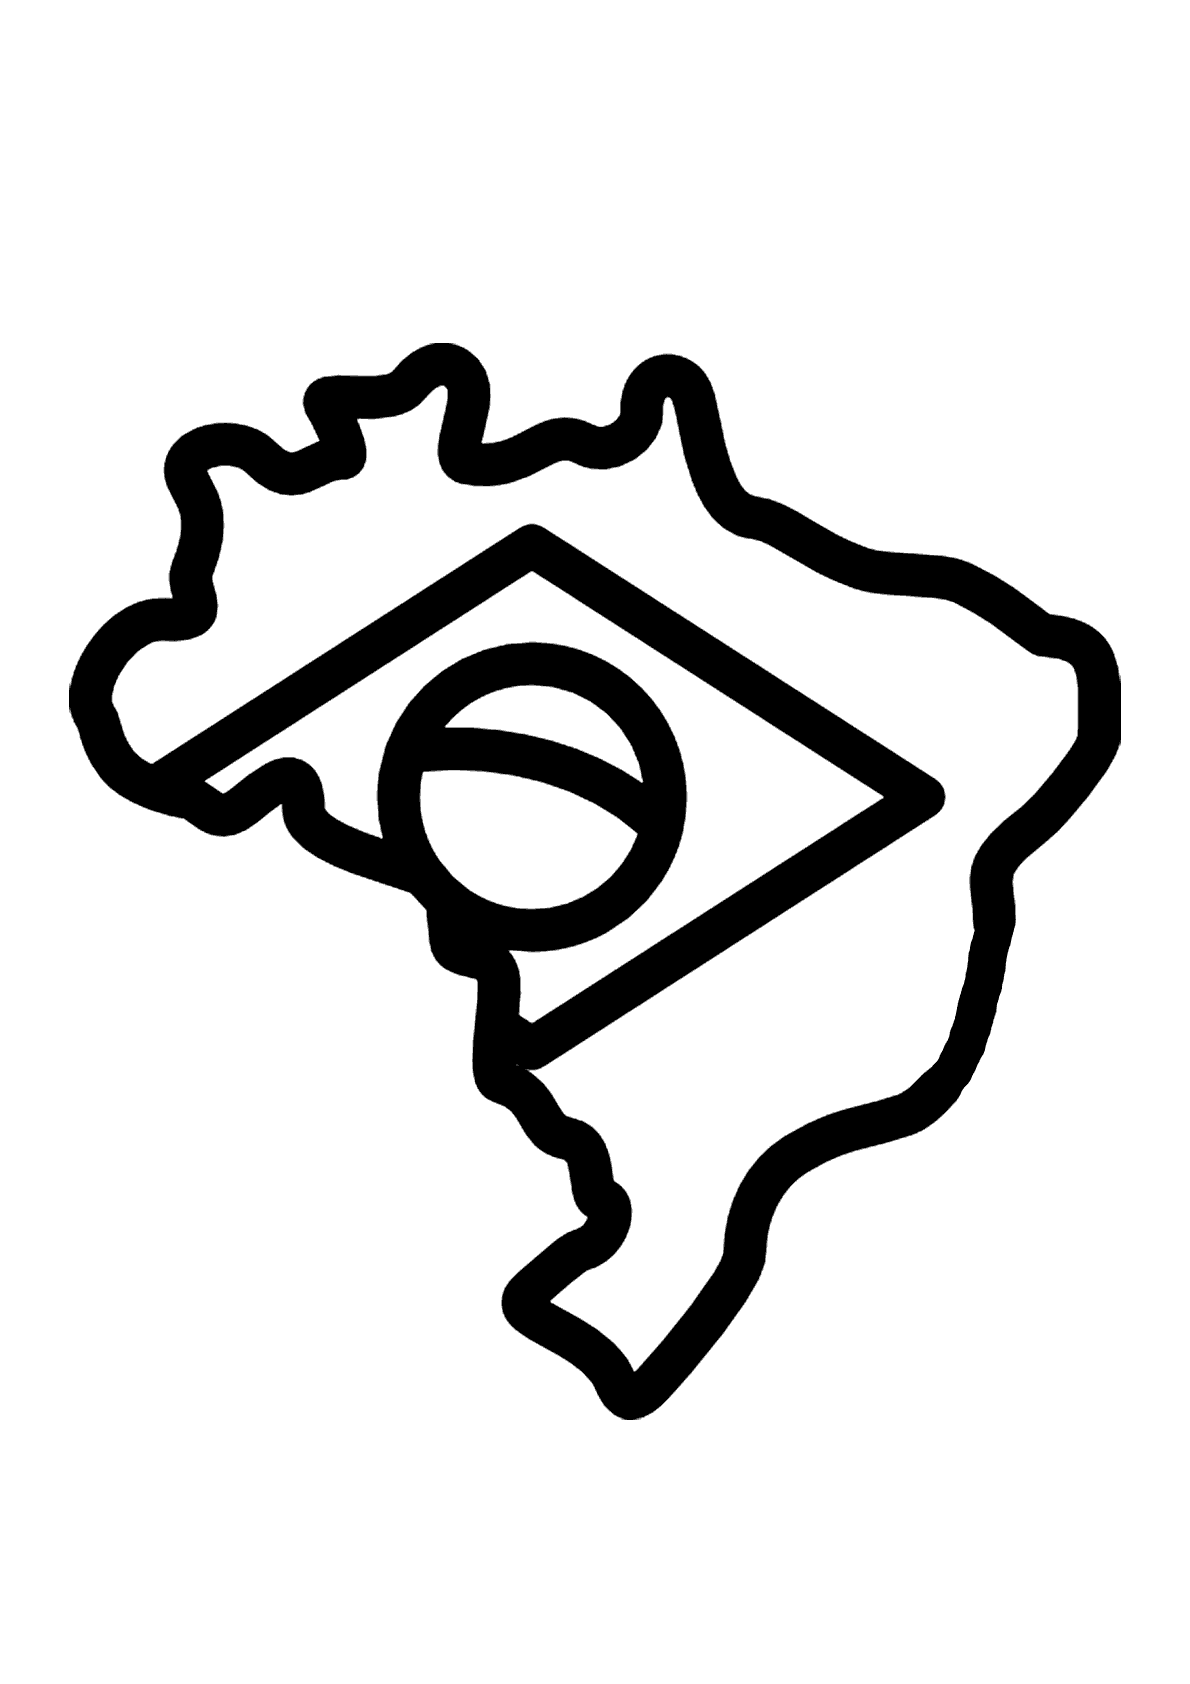 https://imprimirdesenhos.com.br/wp-content/uploads/2023/03/bandeira-do-brasil-e-mapa-para-colorir.png